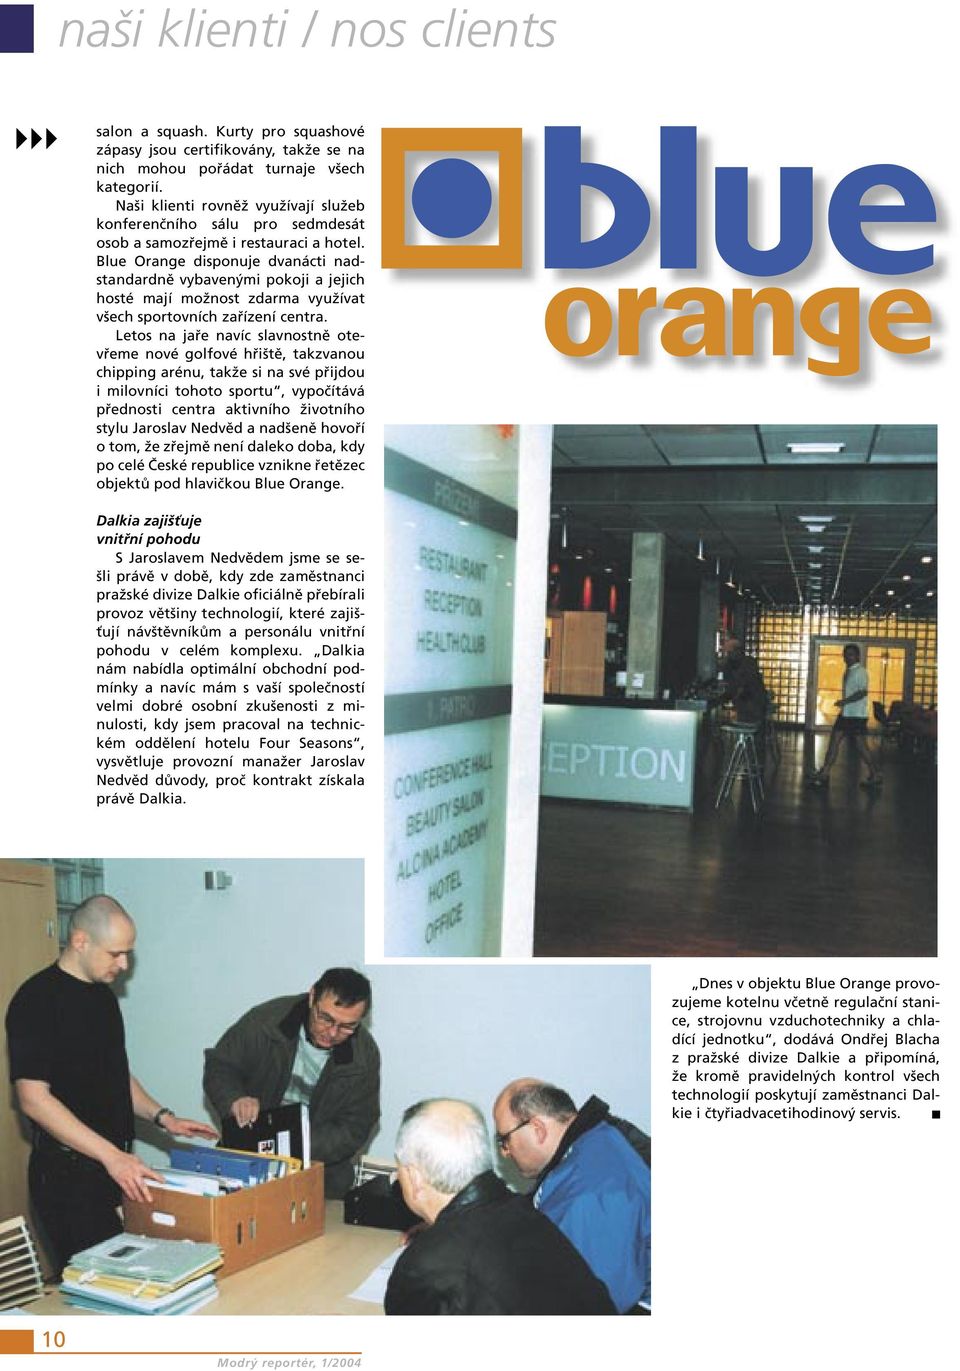 Blue Orange disponuje dvanácti nadstandardně vybavenými pokoji a jejich hosté mají možnost zdarma využívat všech sportovních zařízení centra.